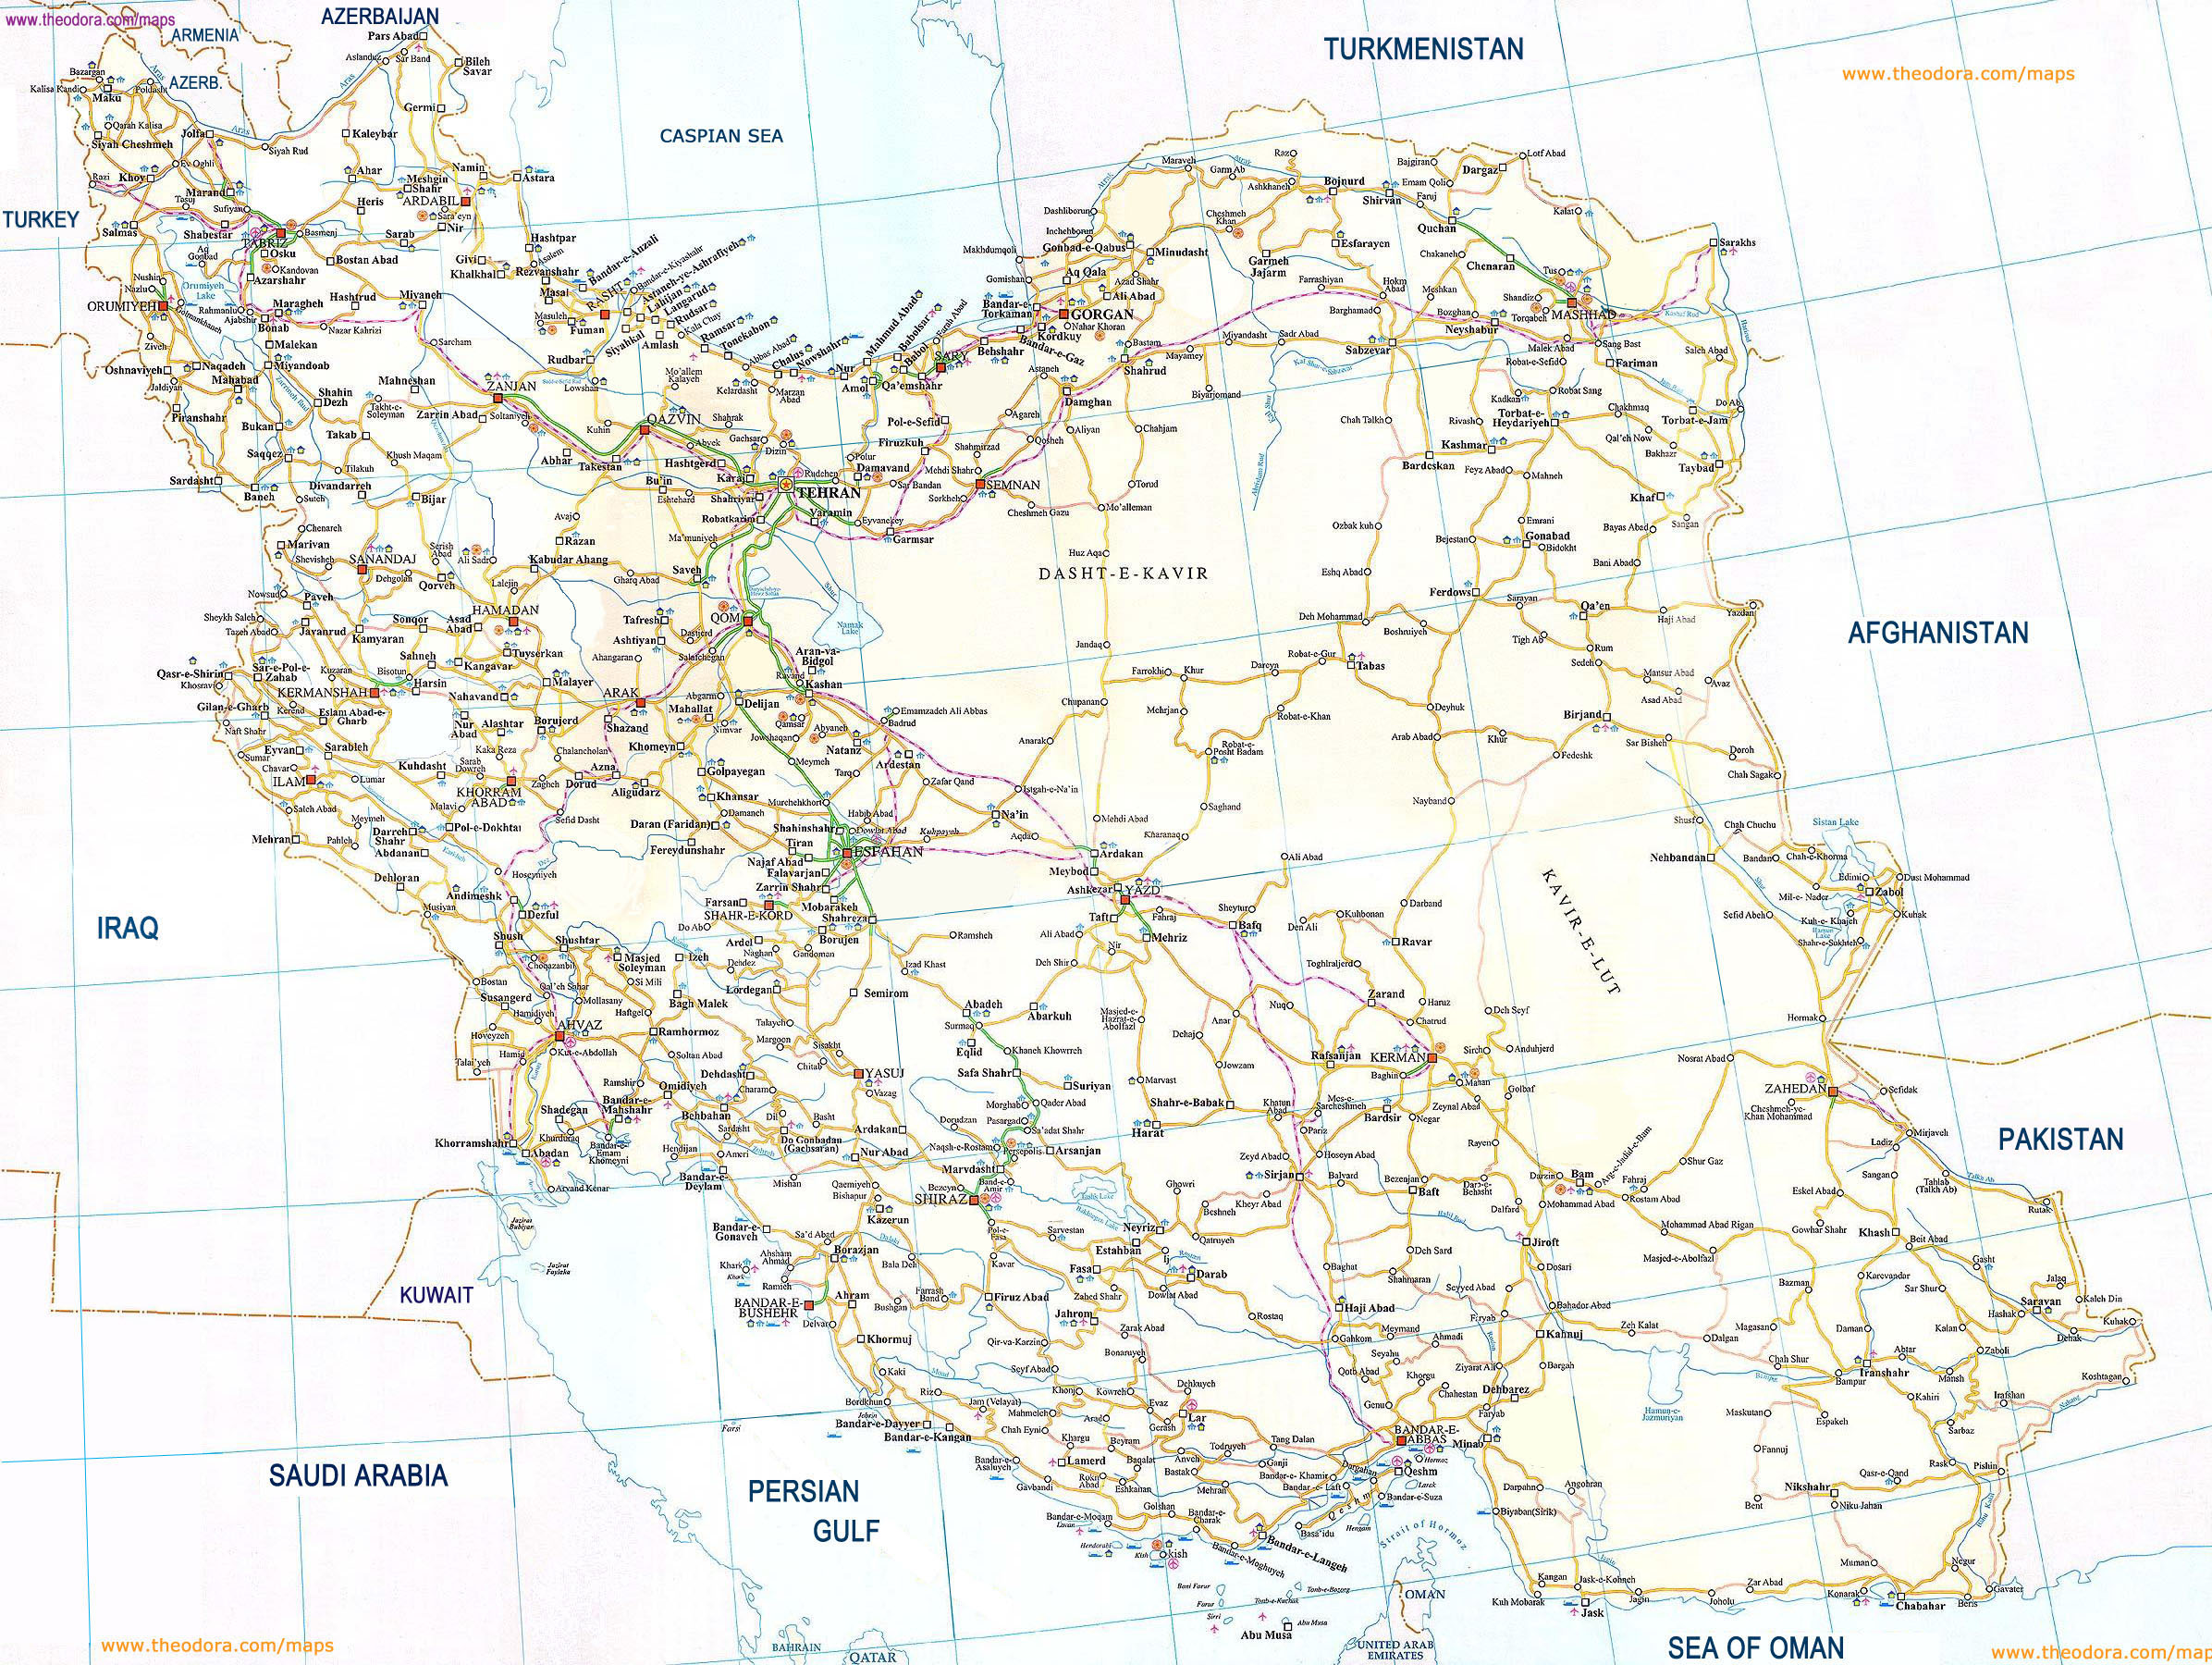 نقشه انگلیسی راه های ایران با کیفیت بالا  English Map Of High Quality Iranian Road